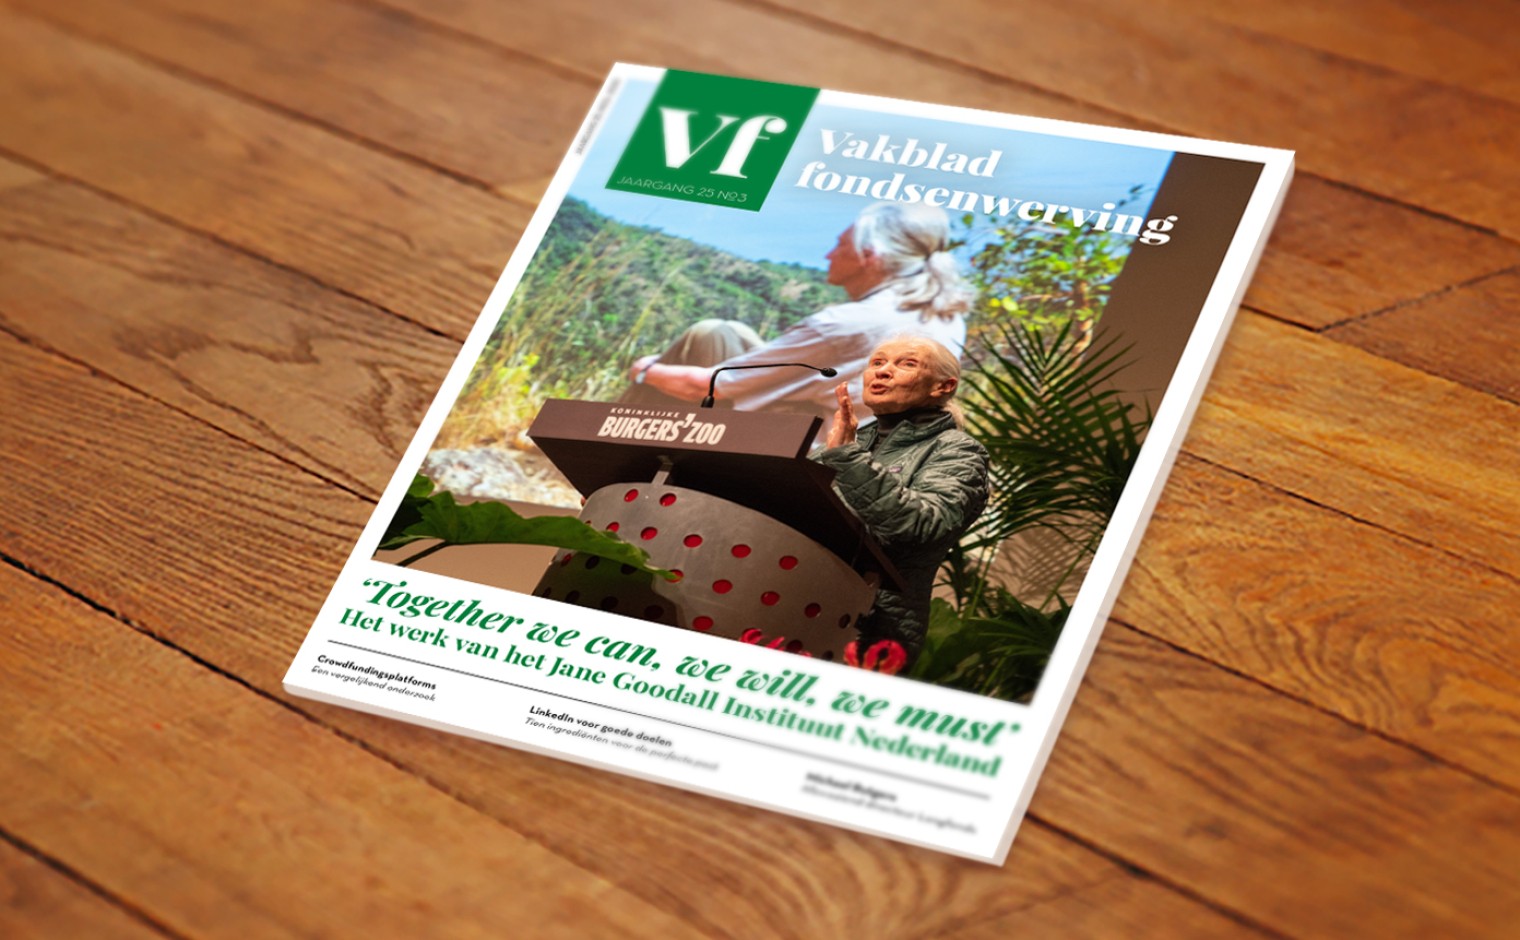 De cover van Vakblad fondsenwerving, jaargang 25, nummer 3.